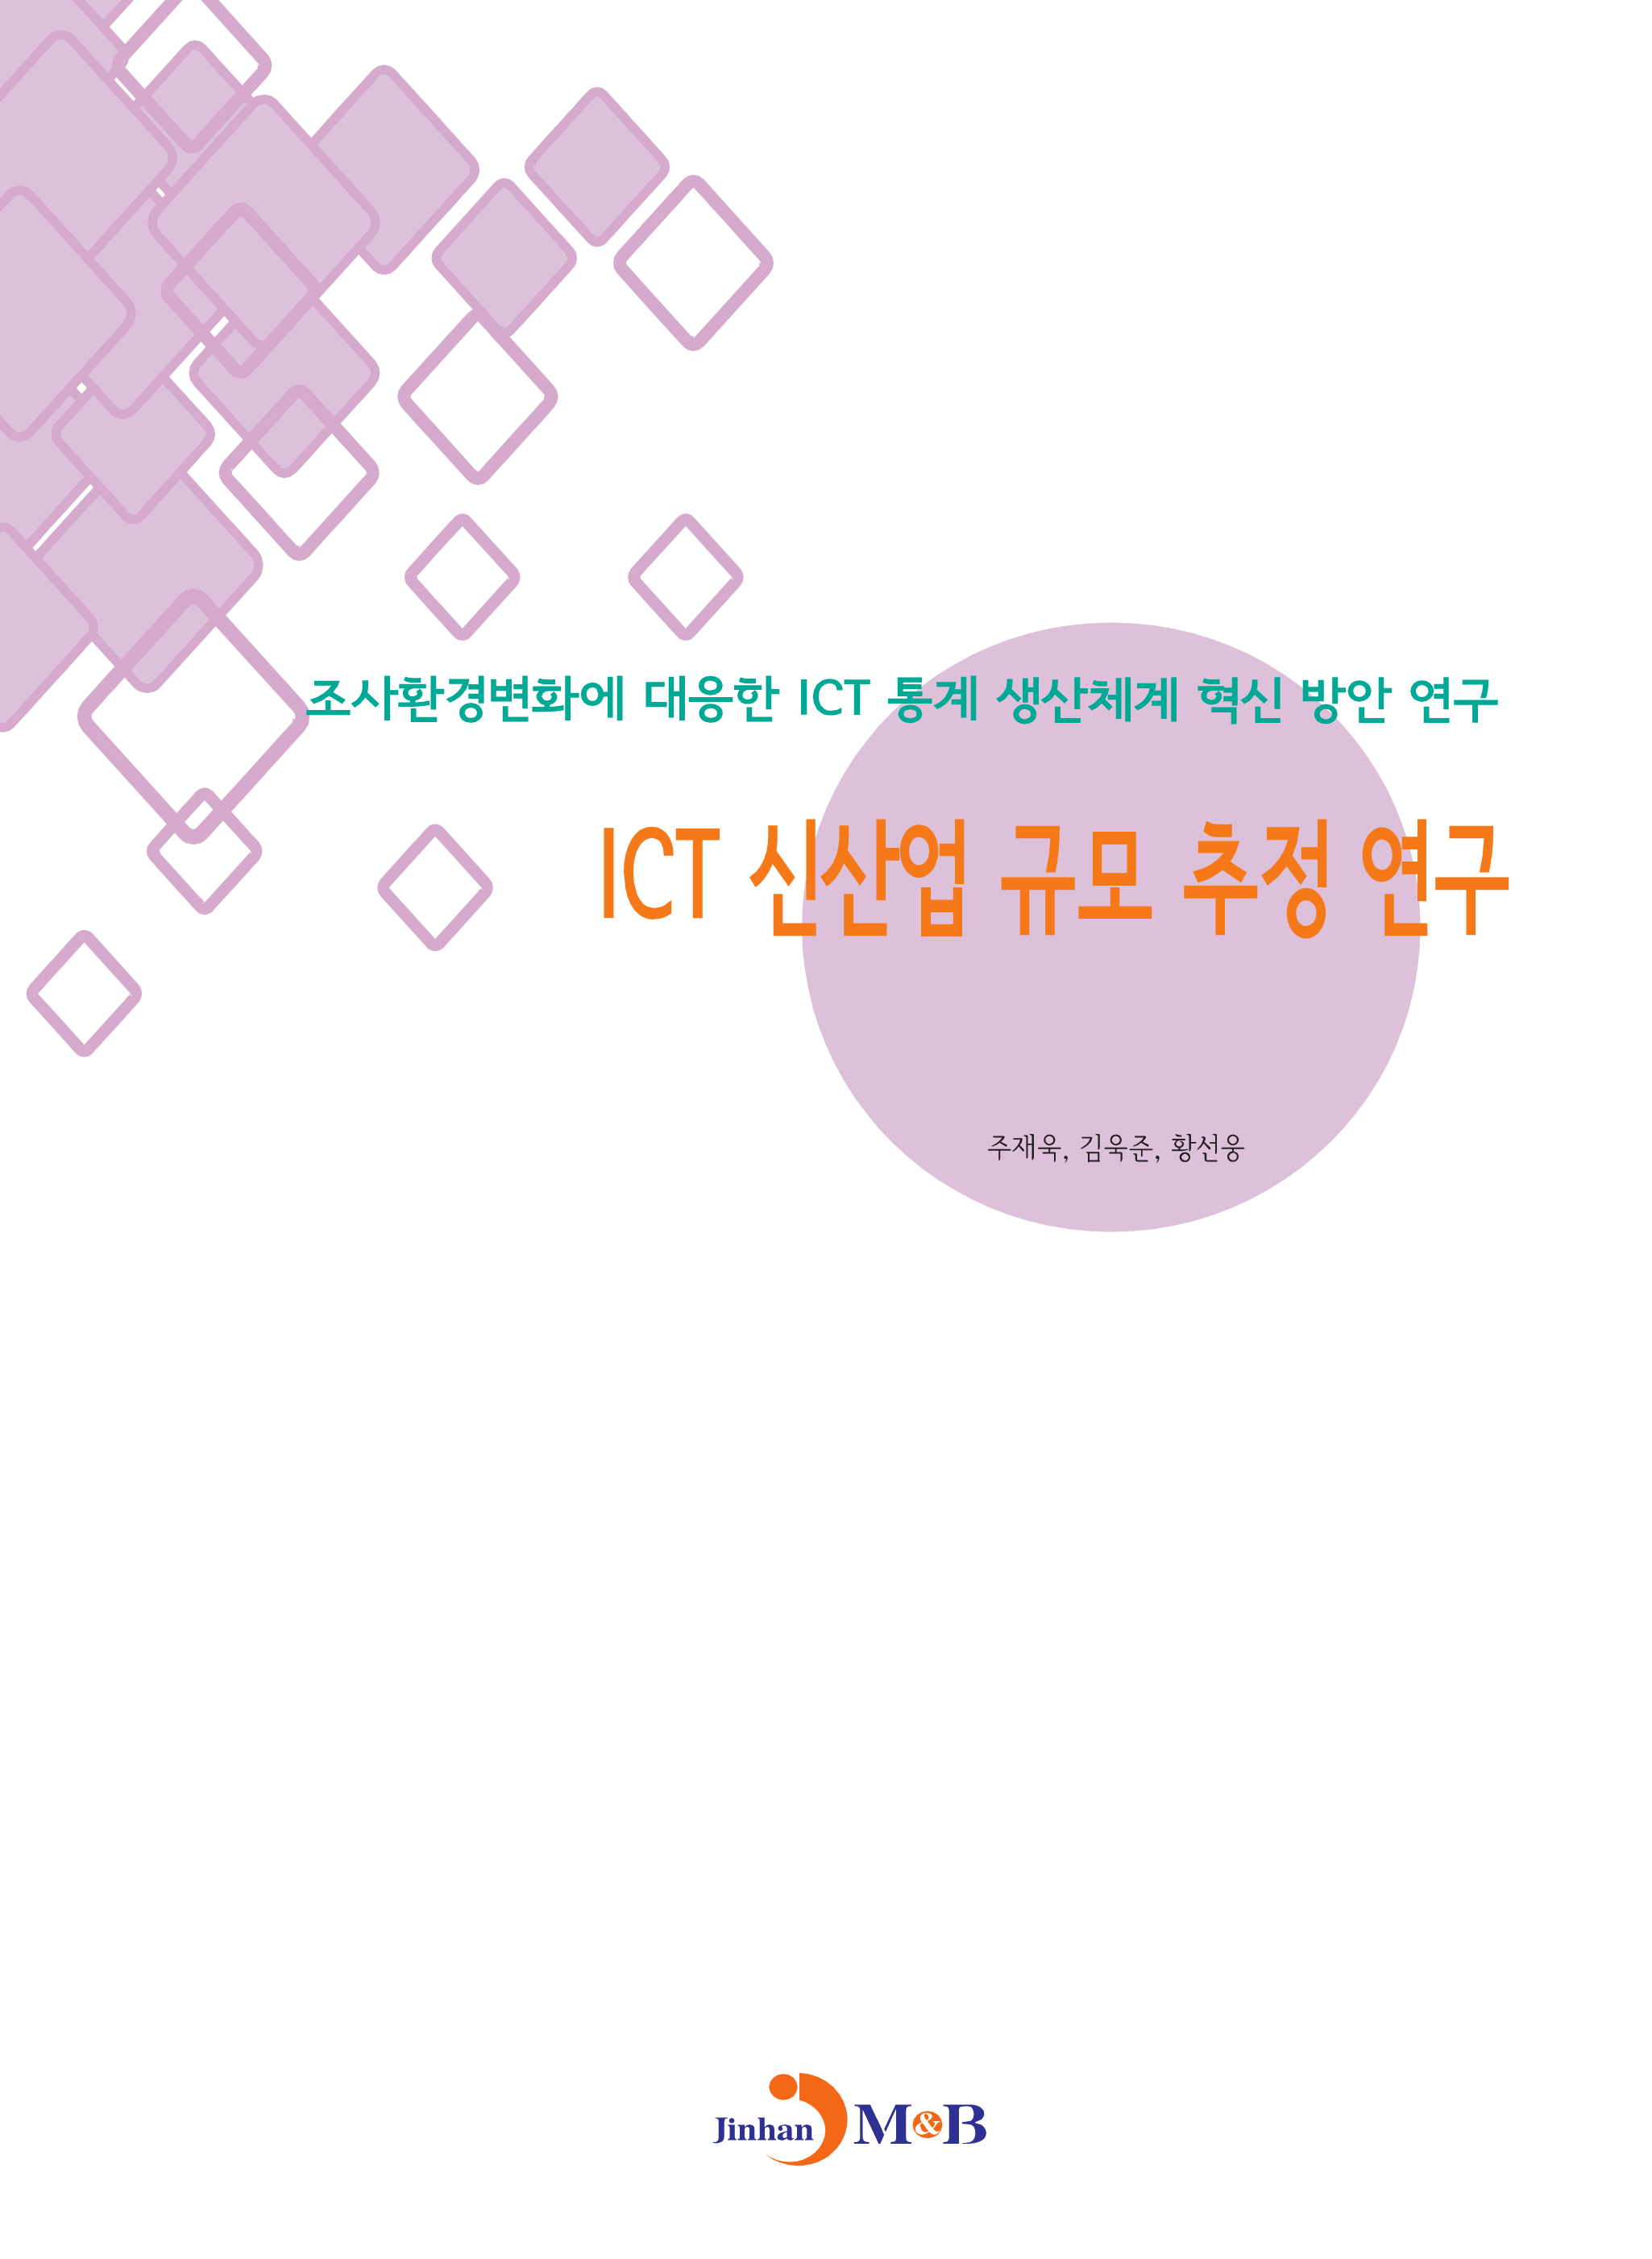 ICT 신산업 규모 추정 연구